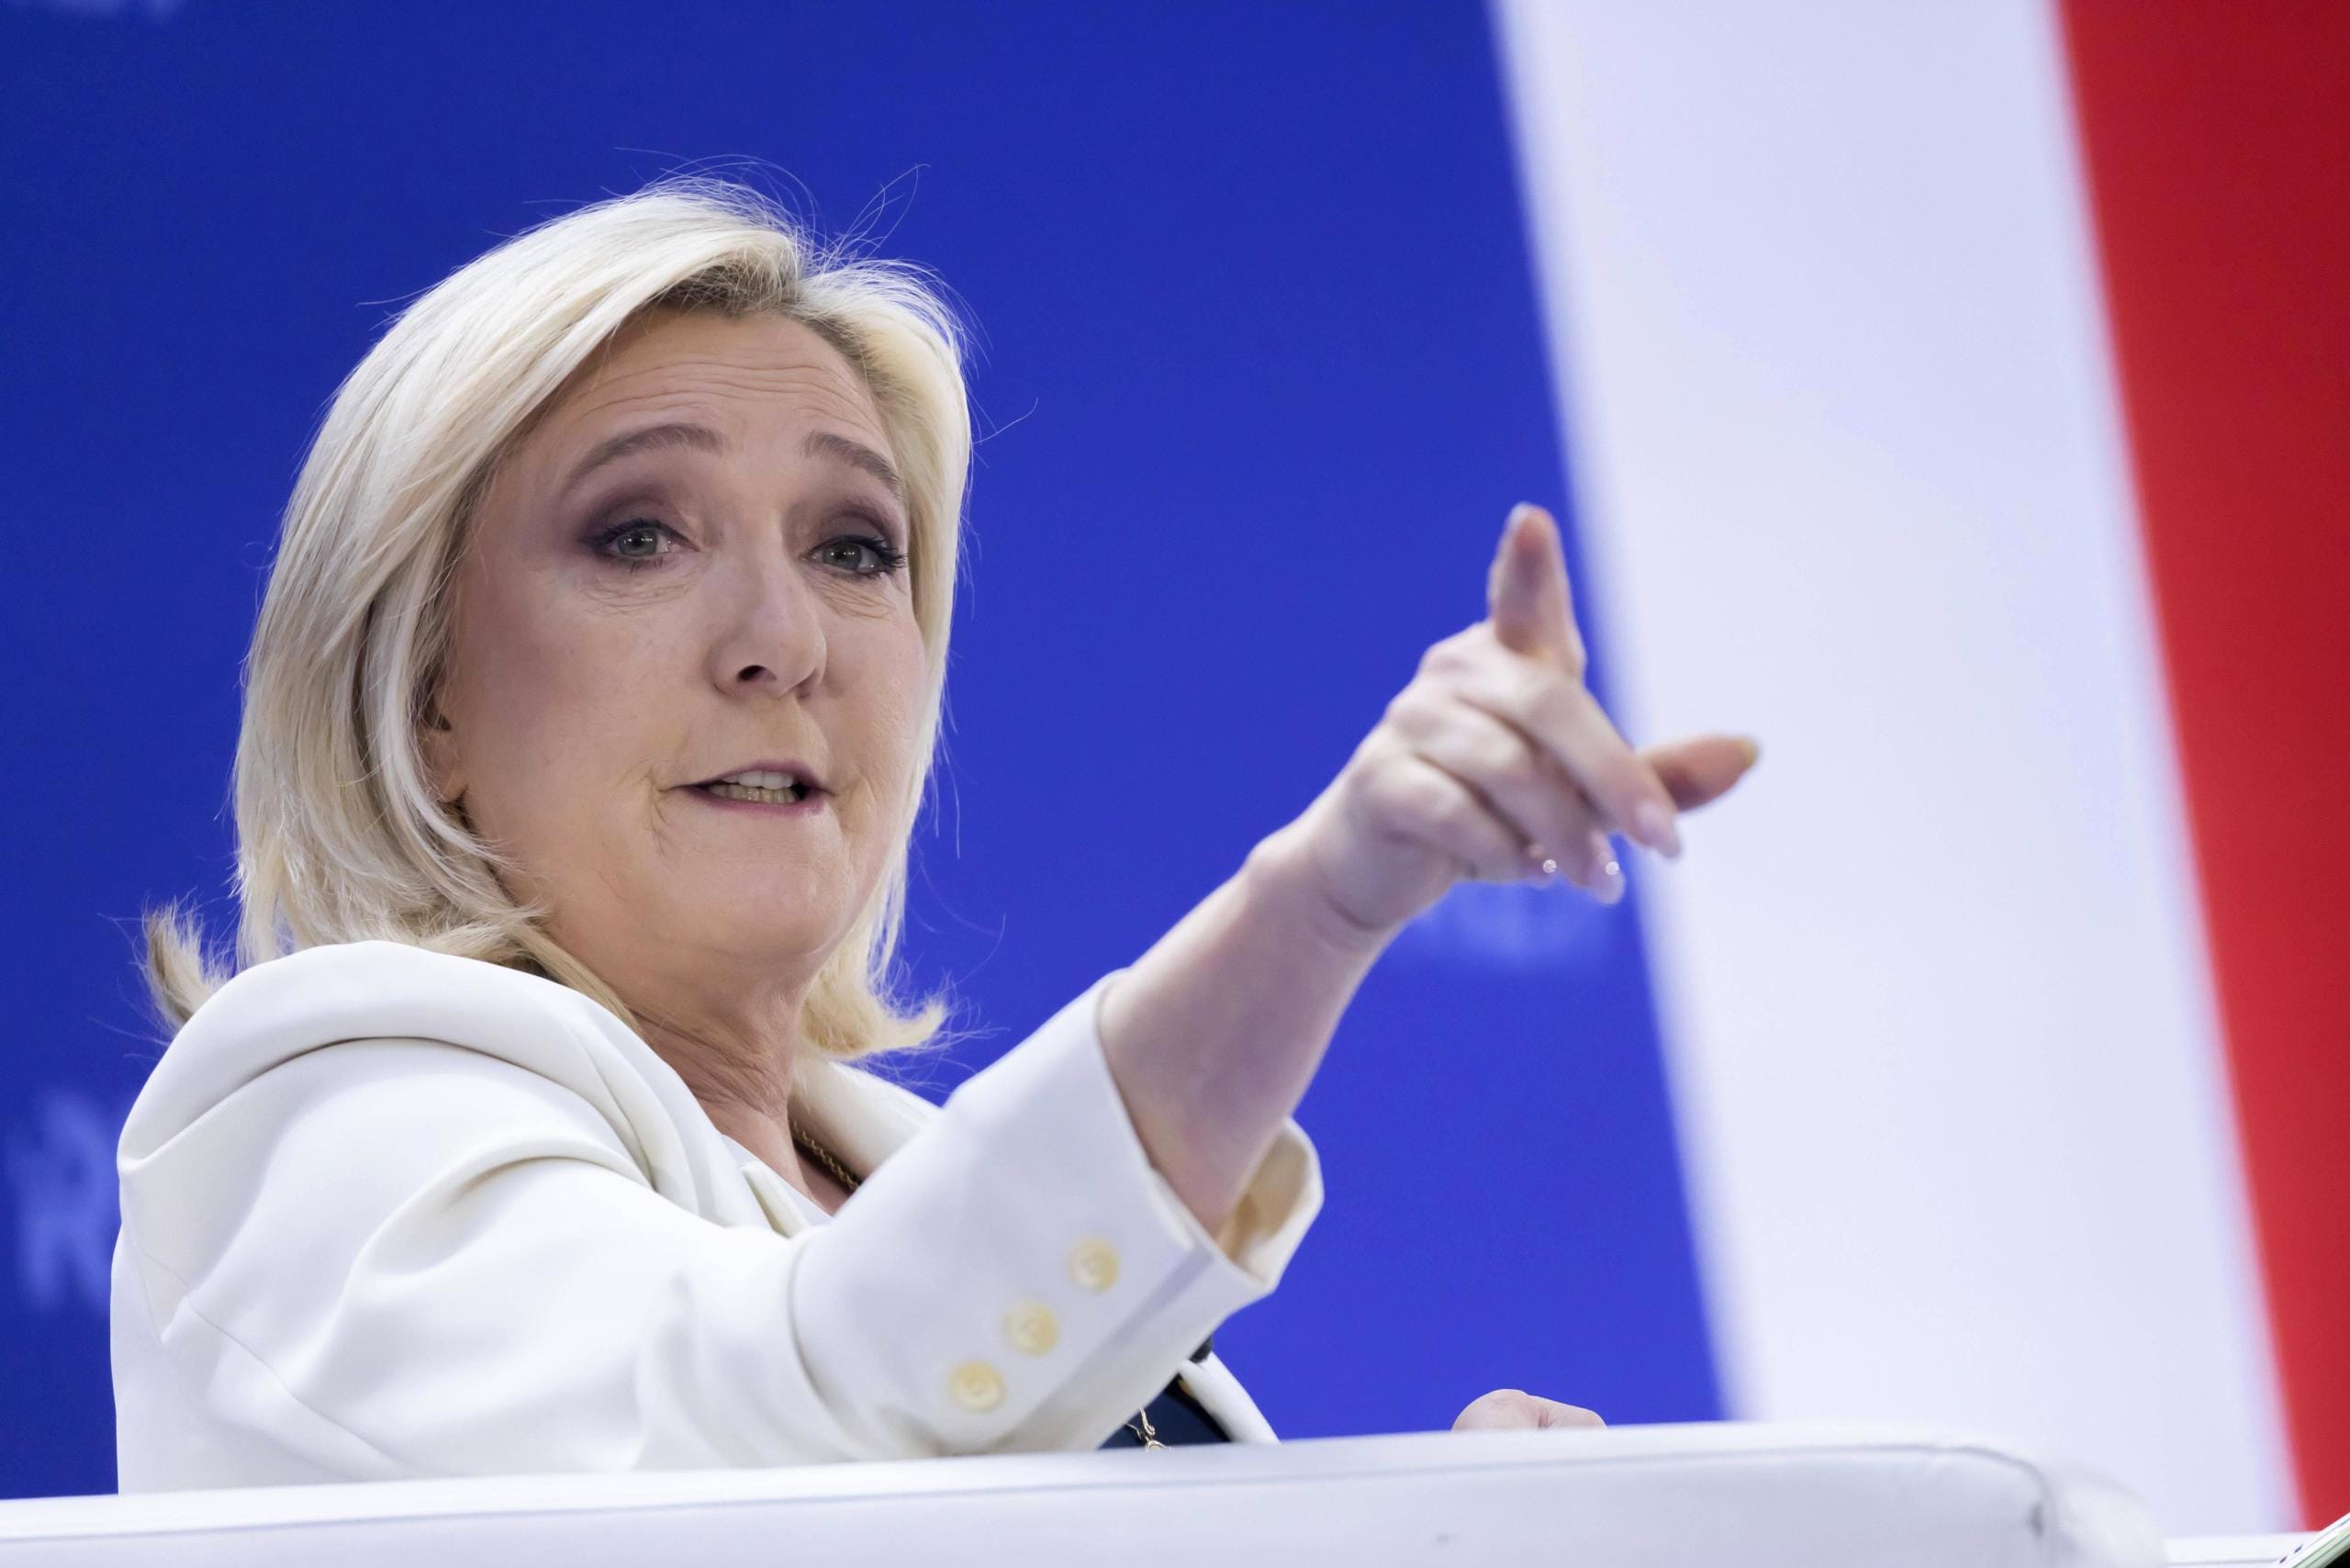 Marine Le Pen è di destra o sinistra? Qual è il suo partito, chi era suo padre e i suoi rapporti con Putin e Salvini